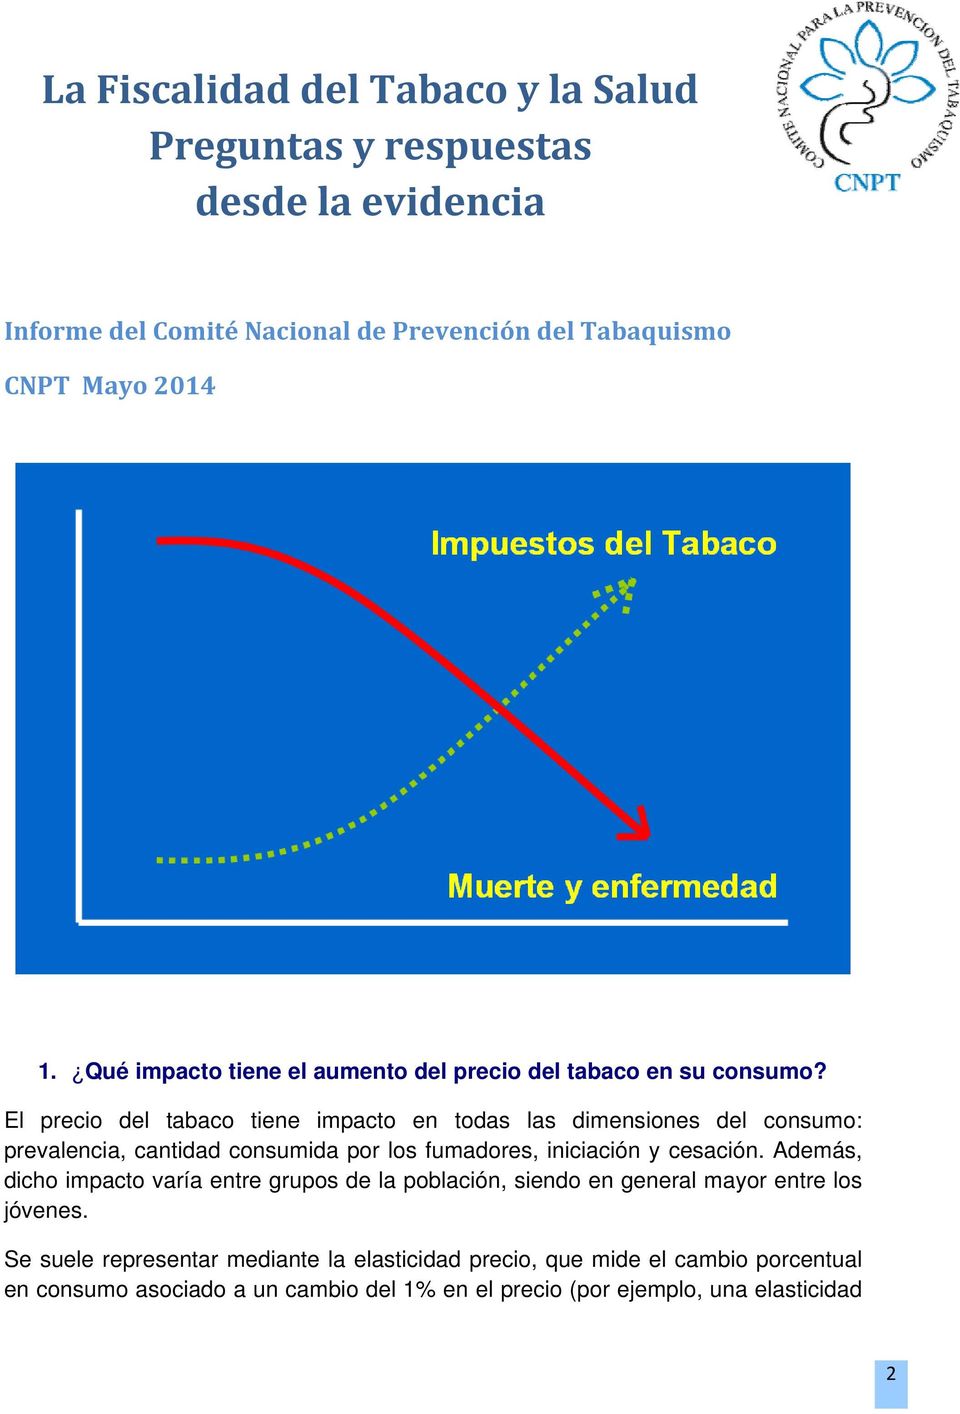 El precio del tabaco tiene impacto en todas las dimensiones del consumo: prevalencia, cantidad consumida por los fumadores, iniciación y cesación.